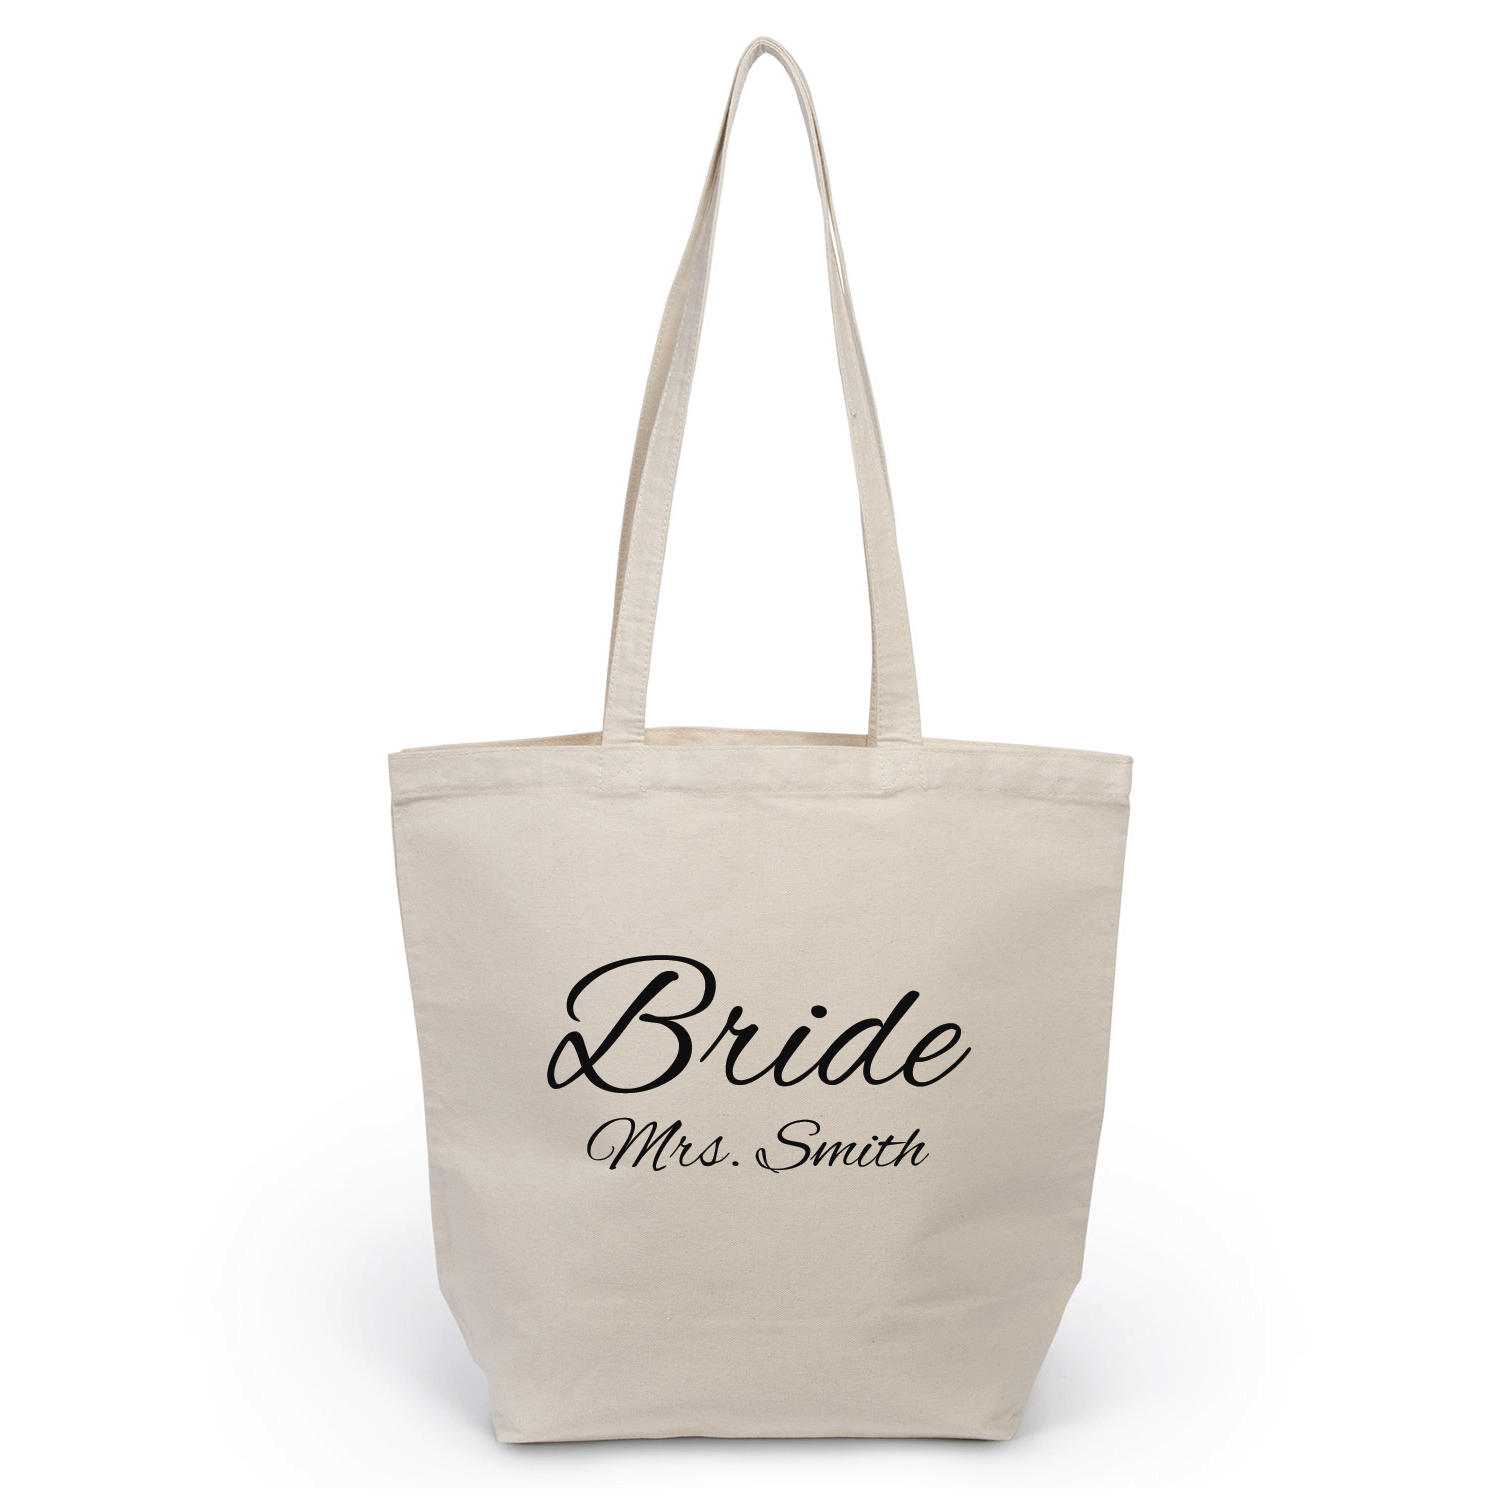 Bride - Mrs. Smith Tote Bag wedding